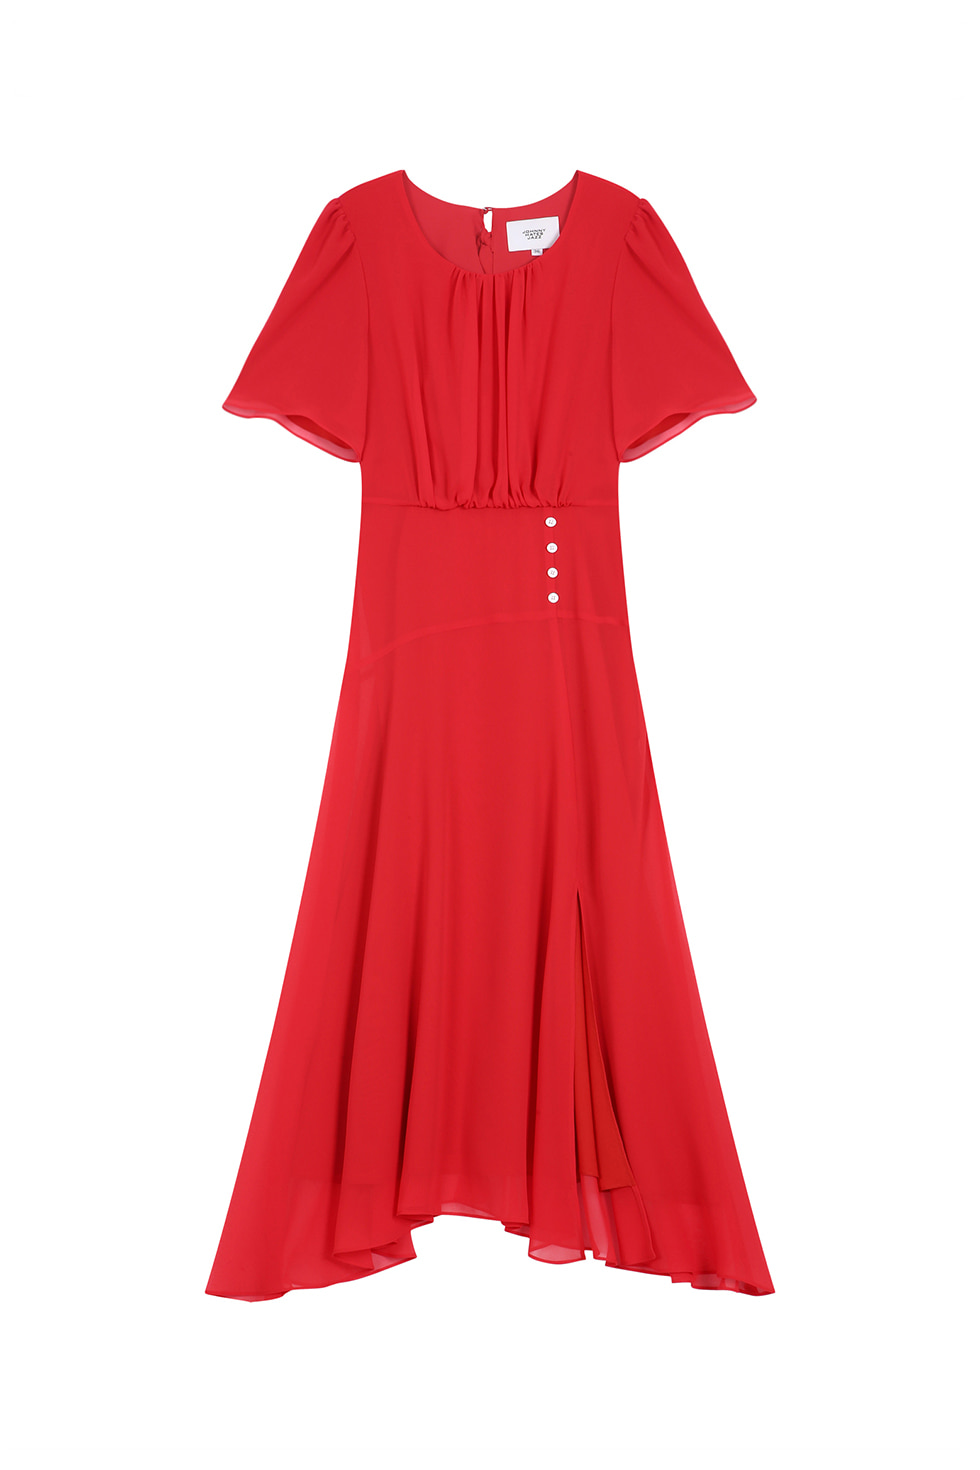 CHIFFON SHIRRING DRESS - RED